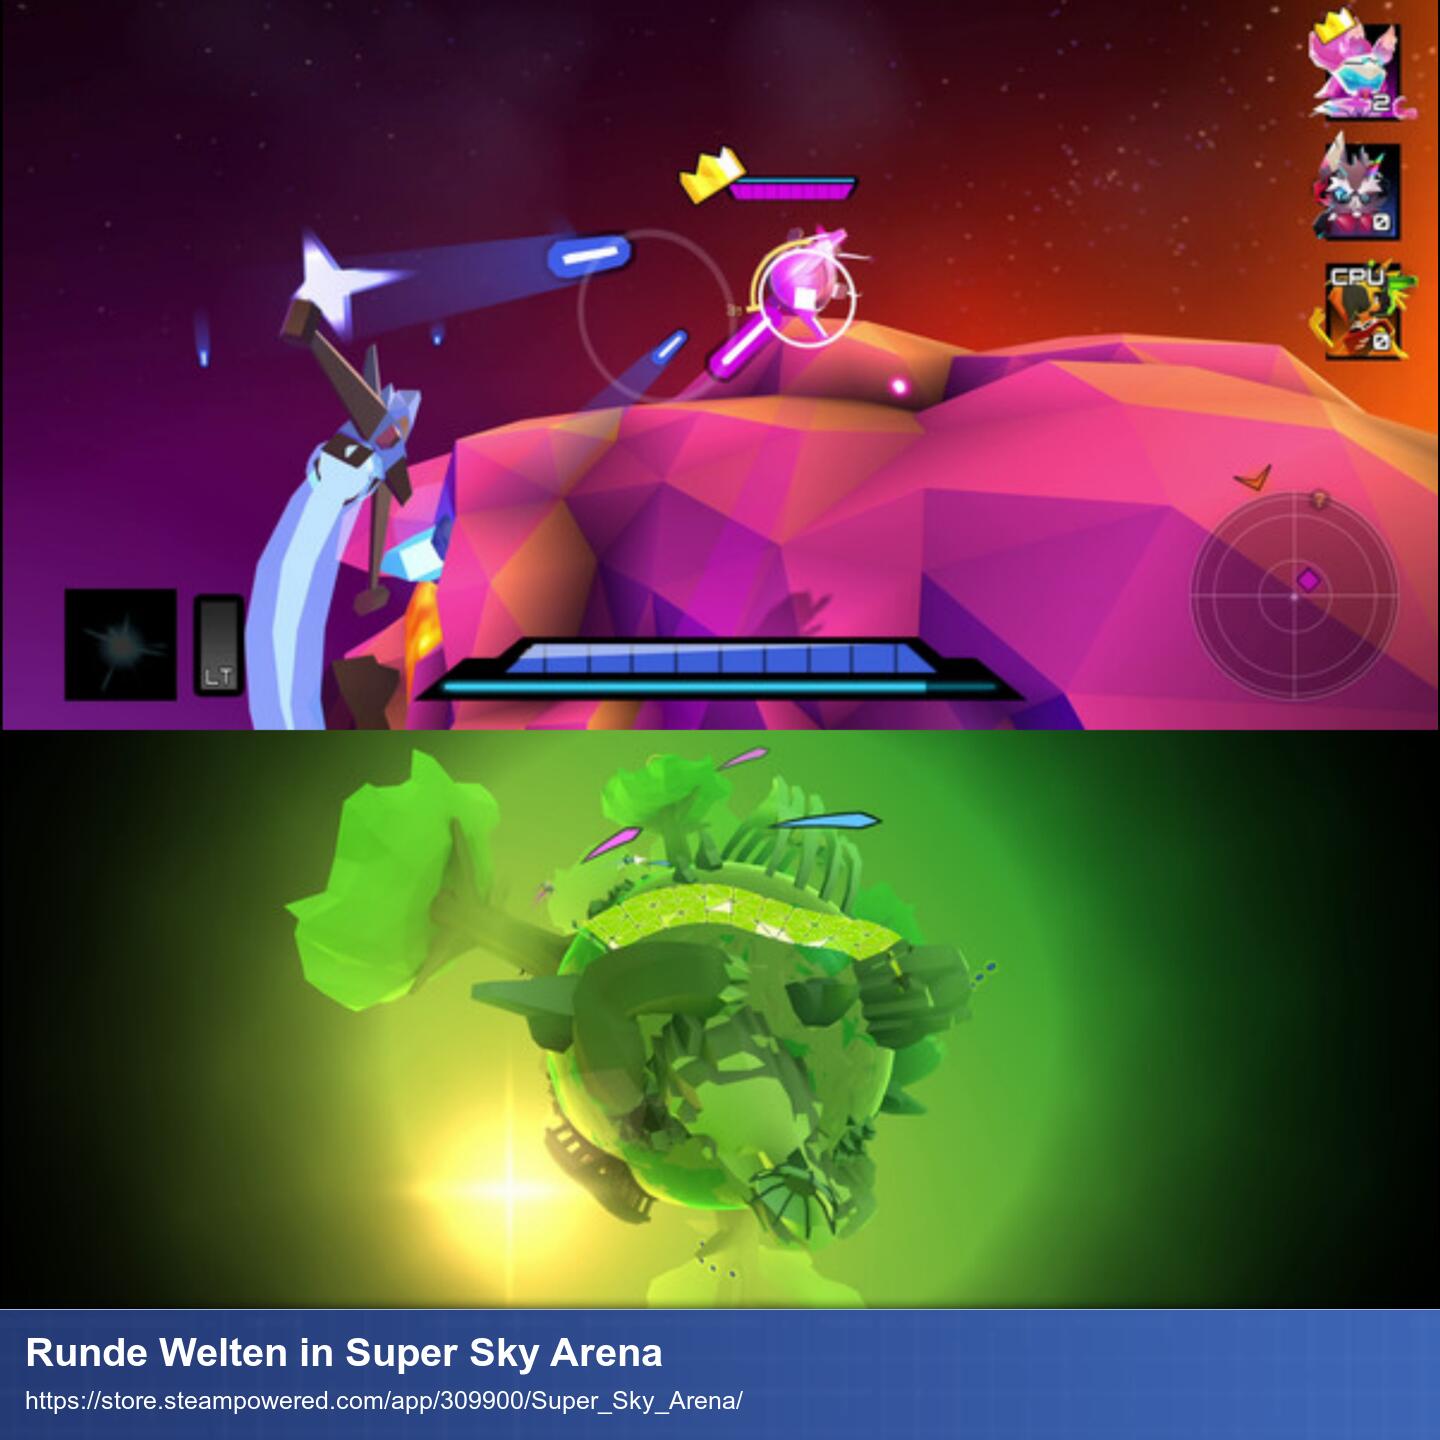 Zwei Screenshots übereinander. Beide zeigen die runden und sehr kleinen Planetenwelten des Spiels um die man herumfliegt. Die obere Welt ist rötlich gehalten und ein blaues Raumschiff schießt gerade auf ein rosanes. Der untere Screenshot zeigt eine grüne Welt mit großen Bäumen.